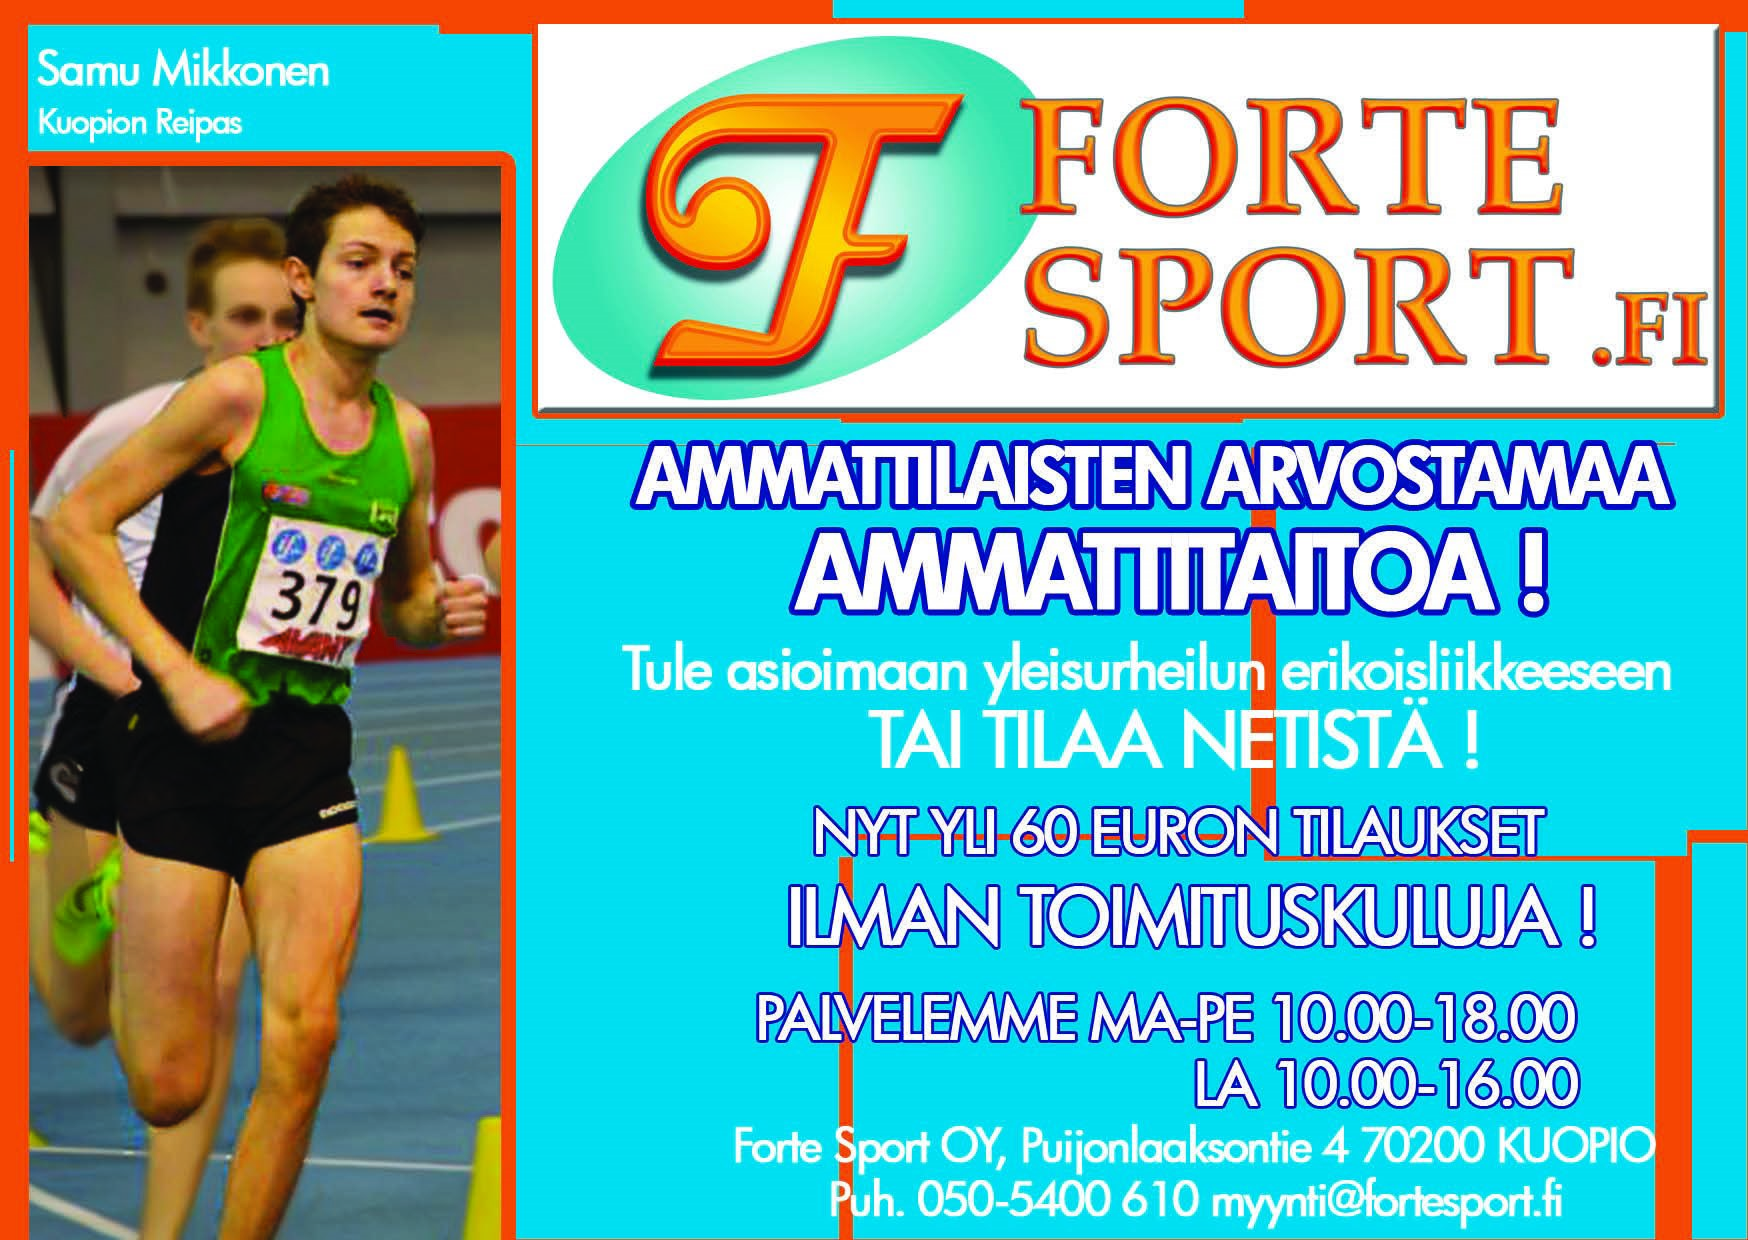 Navitas Junnumaraton Navitas parkkialue, Wredenkatu 2 La 15.6.13 klo 10.00 alkaen Alle 13-vuotiaille tarkoitettu leikkimielinen juoksukilpailu. Kilpailumatkat 100 2000 m.